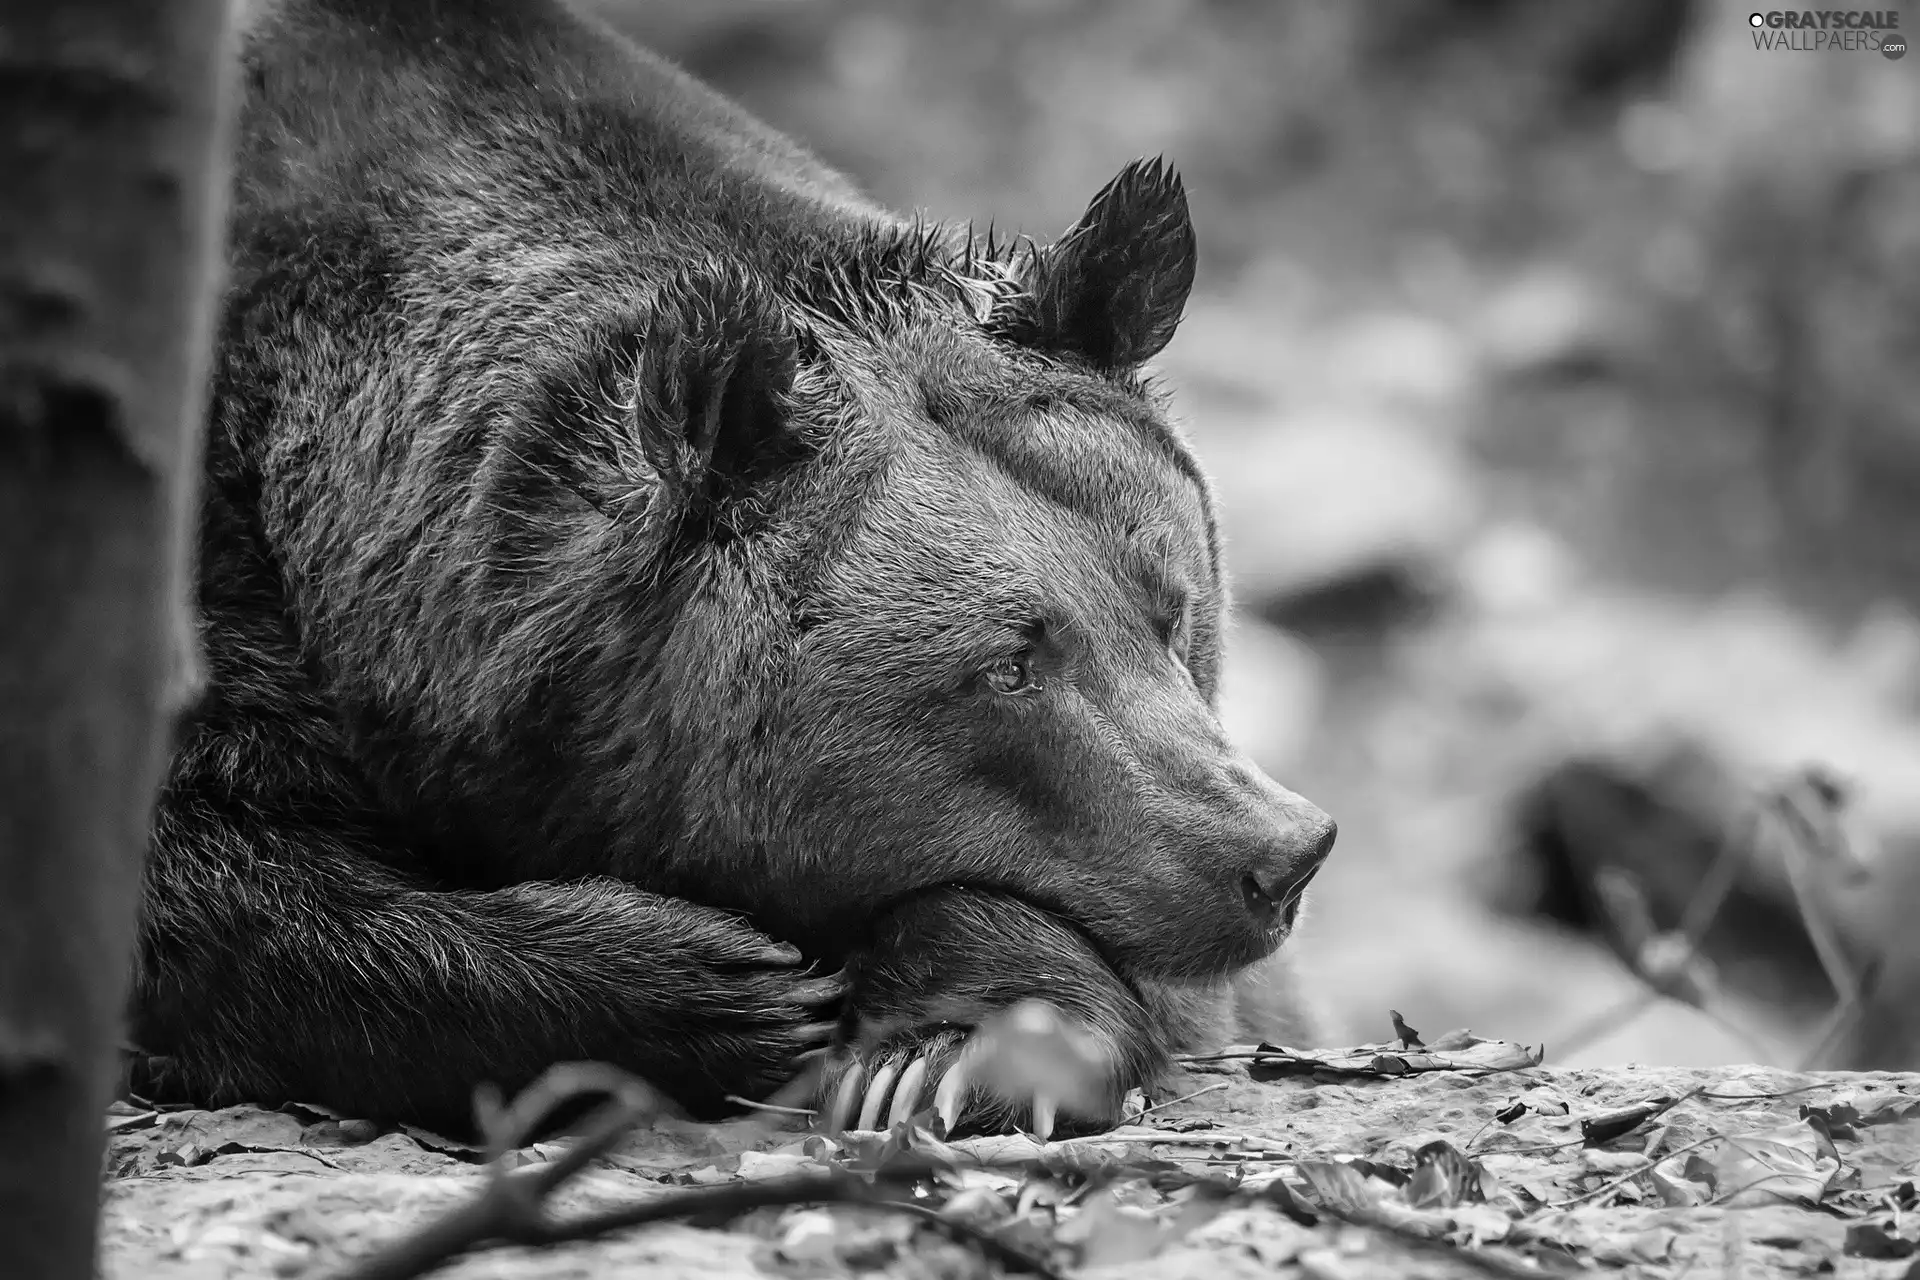 Resting, Teddy Bear